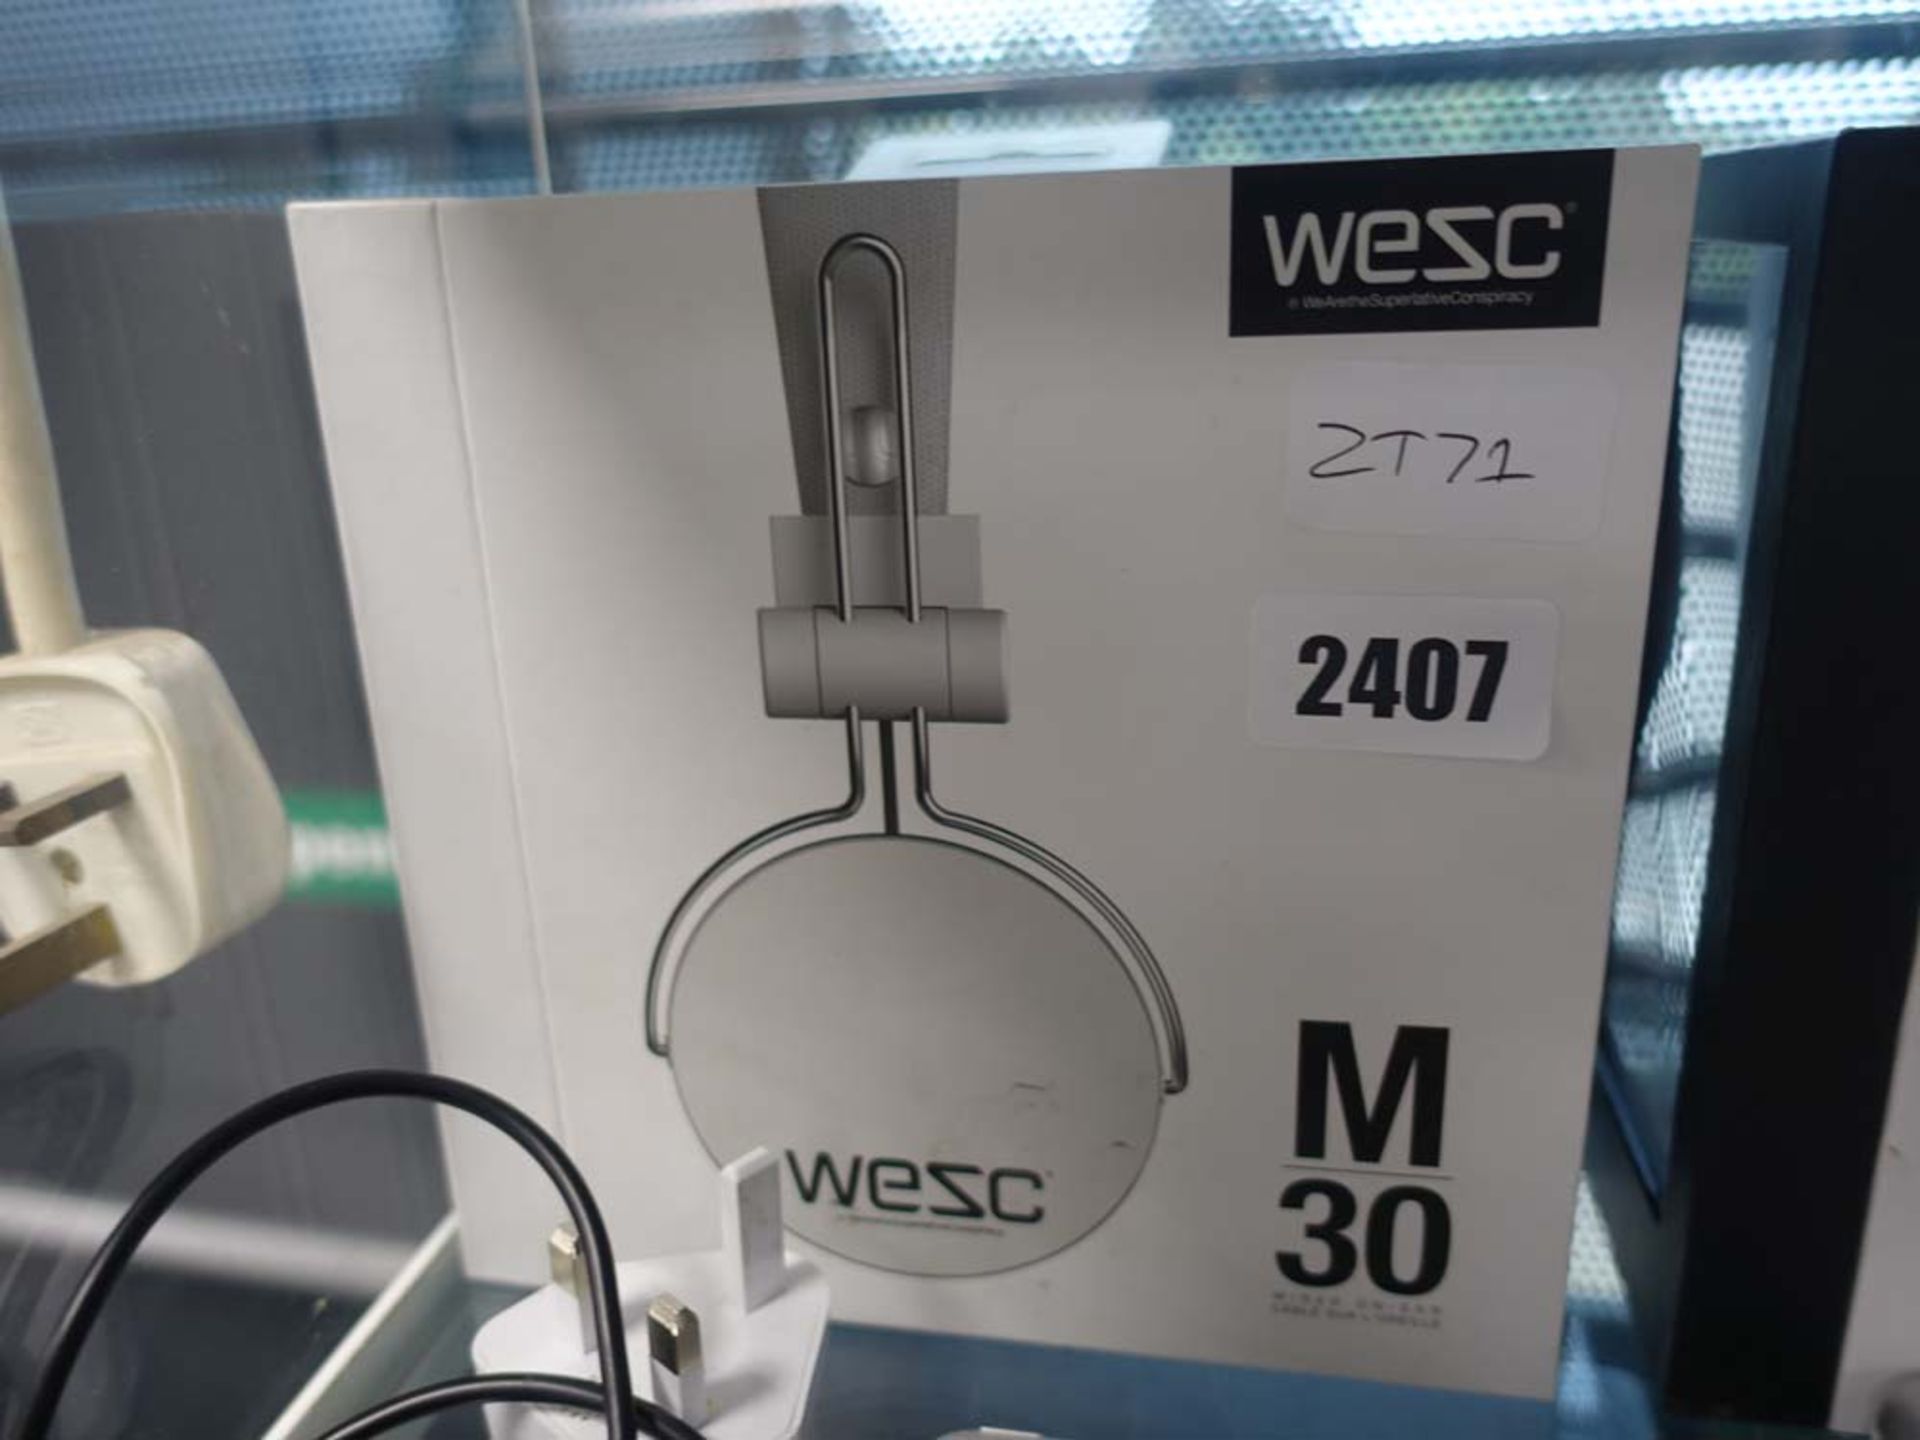 Pair of WESC M30 headphones